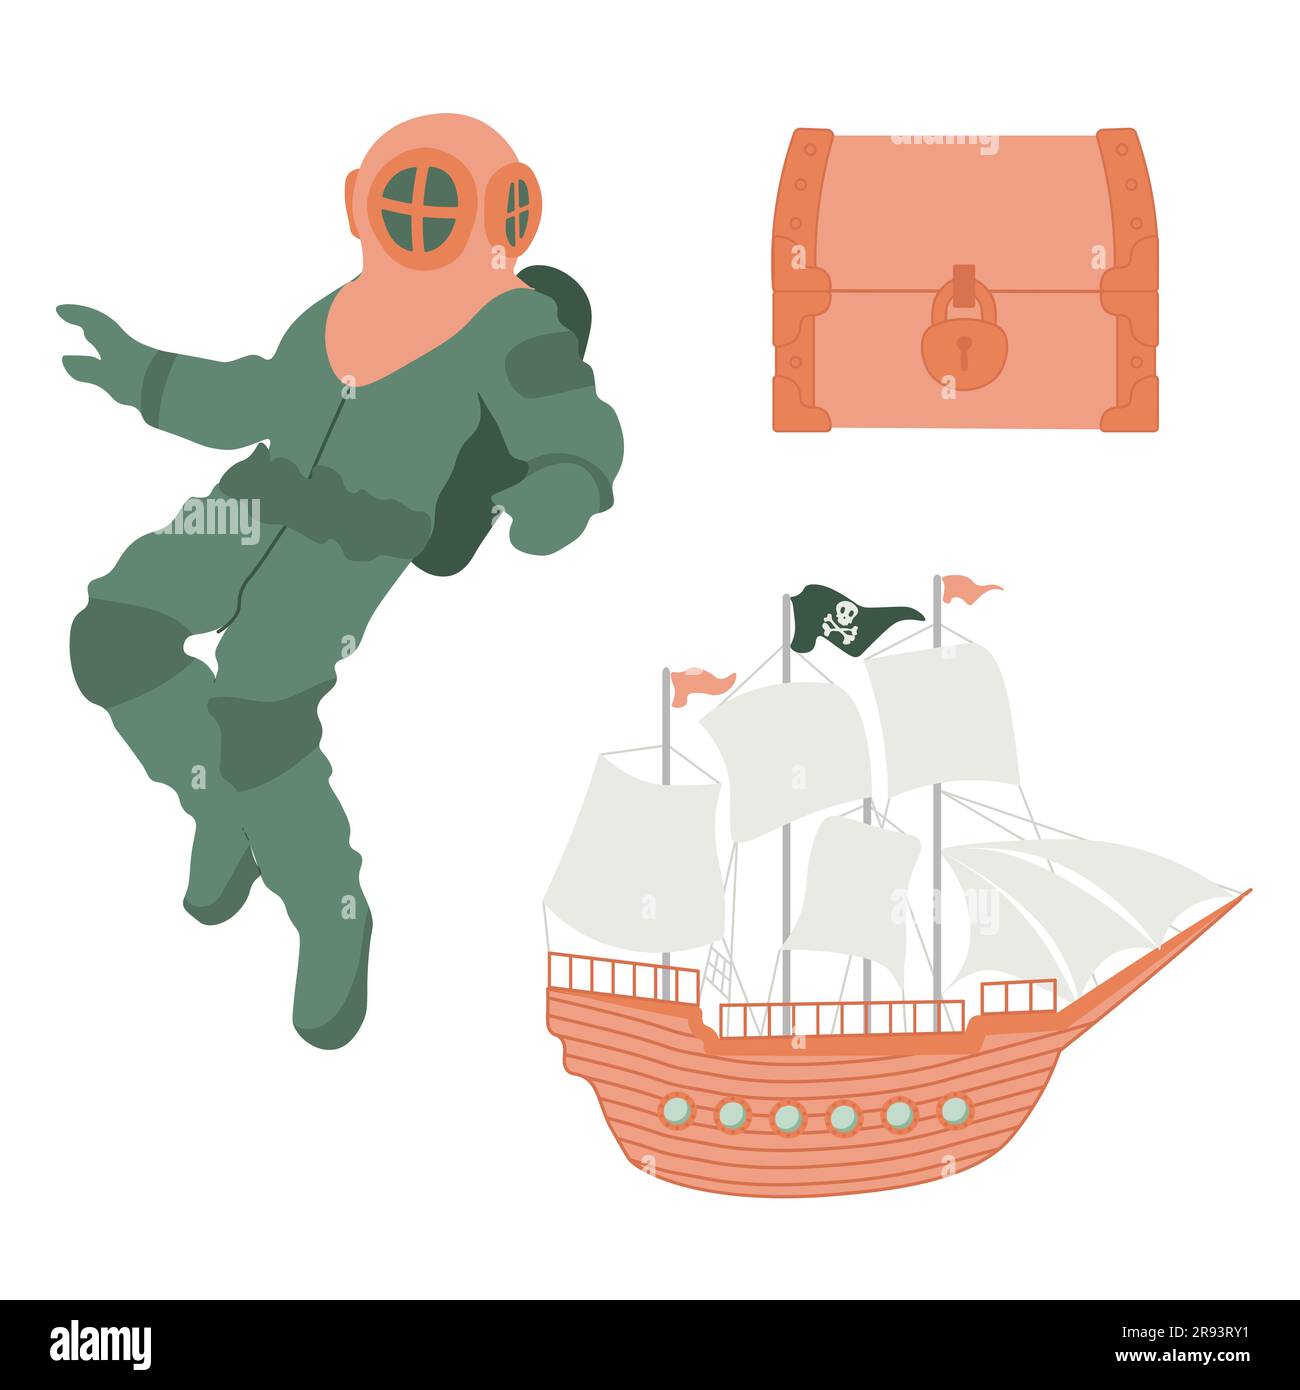 Süßes Vektor-Ozean-Set mit Taucher, Schatztruhe, Schiff. Unterwasser-Cartoon-Kreaturen. Meerestiere. Süße Illustration für Stoff, Kinder Stock Vektor